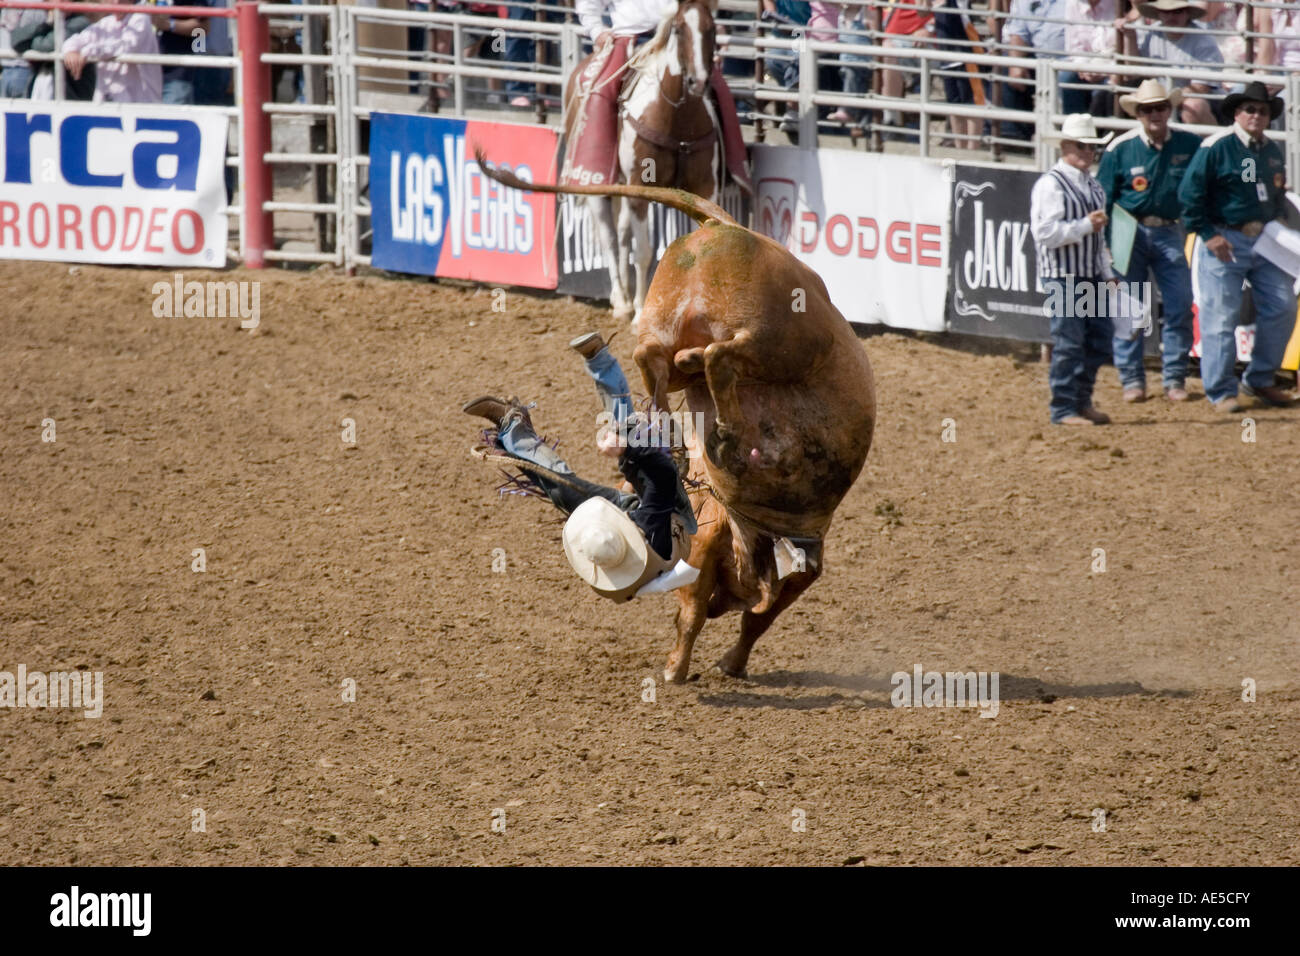 Cowboy, von der Rückseite eines wütenden Ruckeln Bullen in einem Rodeo-Bullenreiten Wettbewerb geworfen Stockfoto